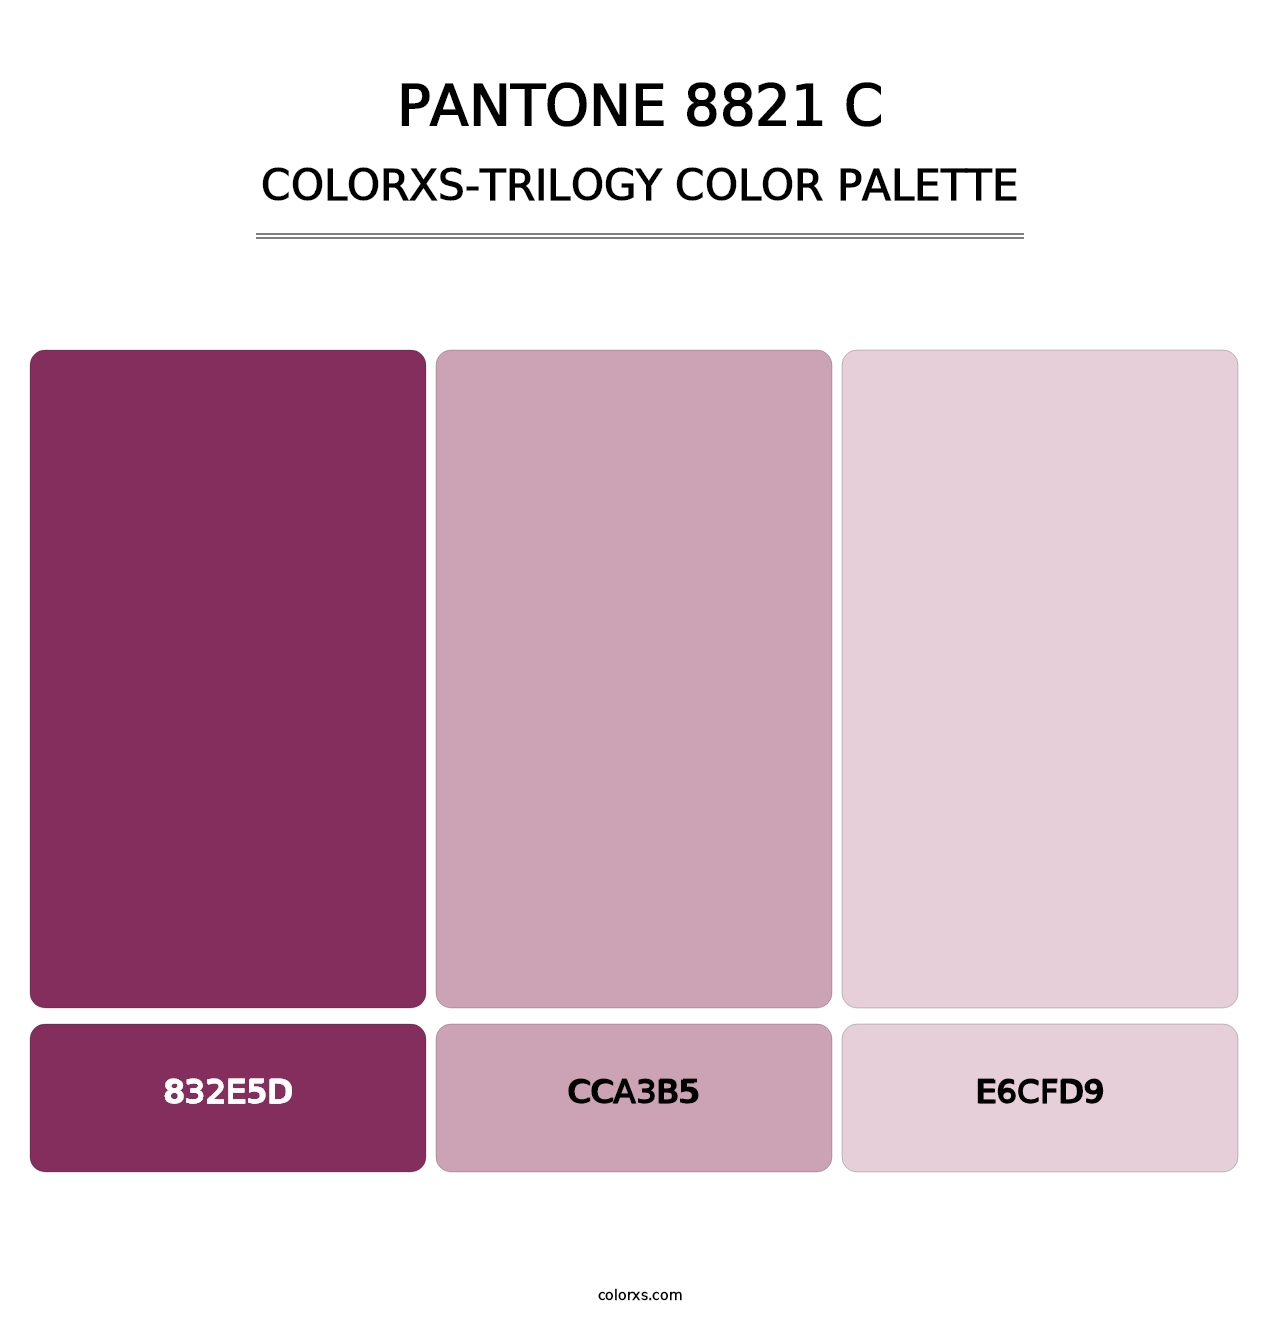 PANTONE 8821 C - Colorxs Trilogy Palette